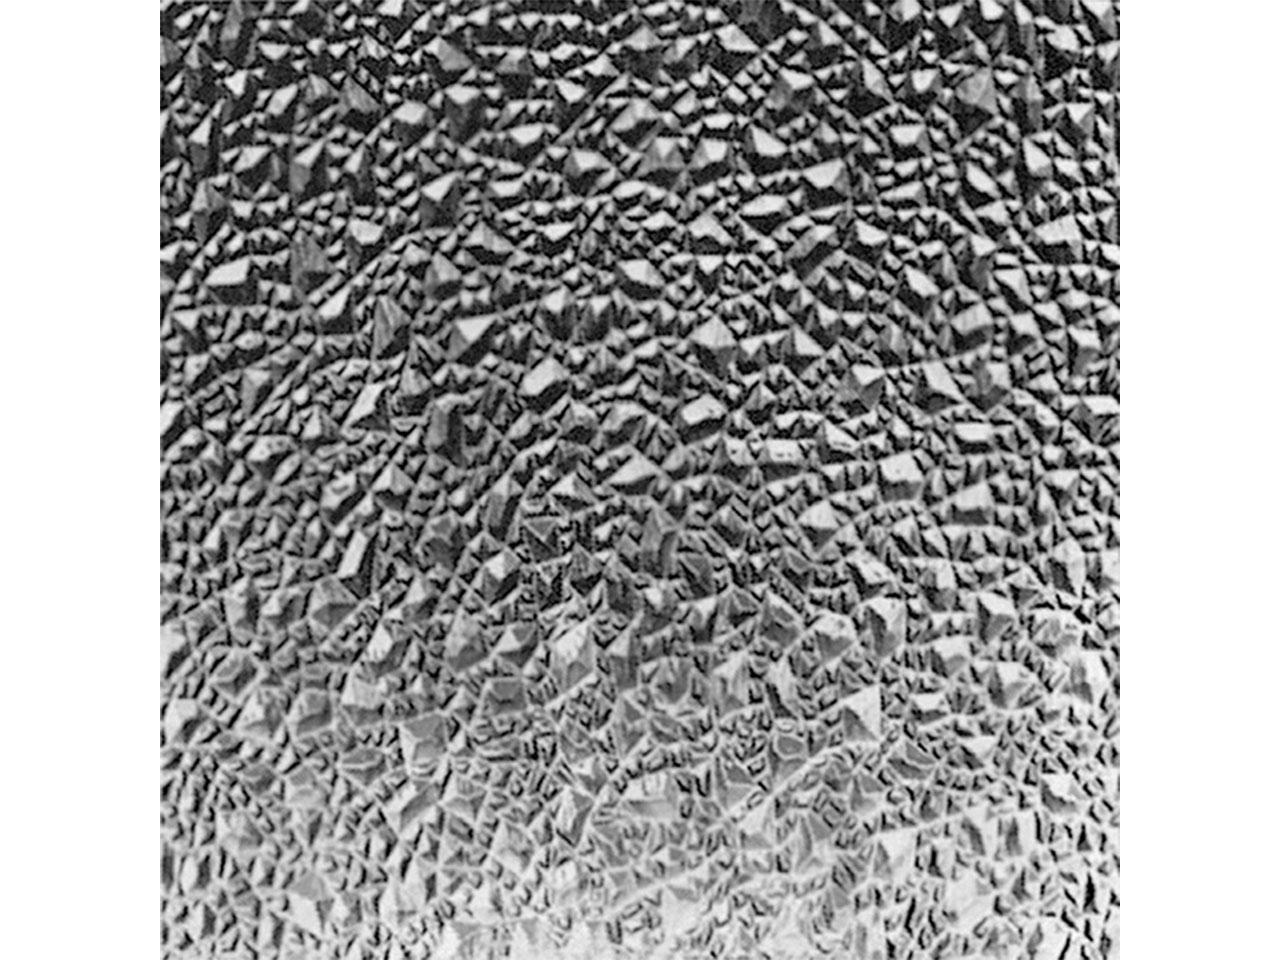 Umělecká skleněná výplň dveří OWOCOR, ledový krystal, 142 x 53,5 x 0,5 cm